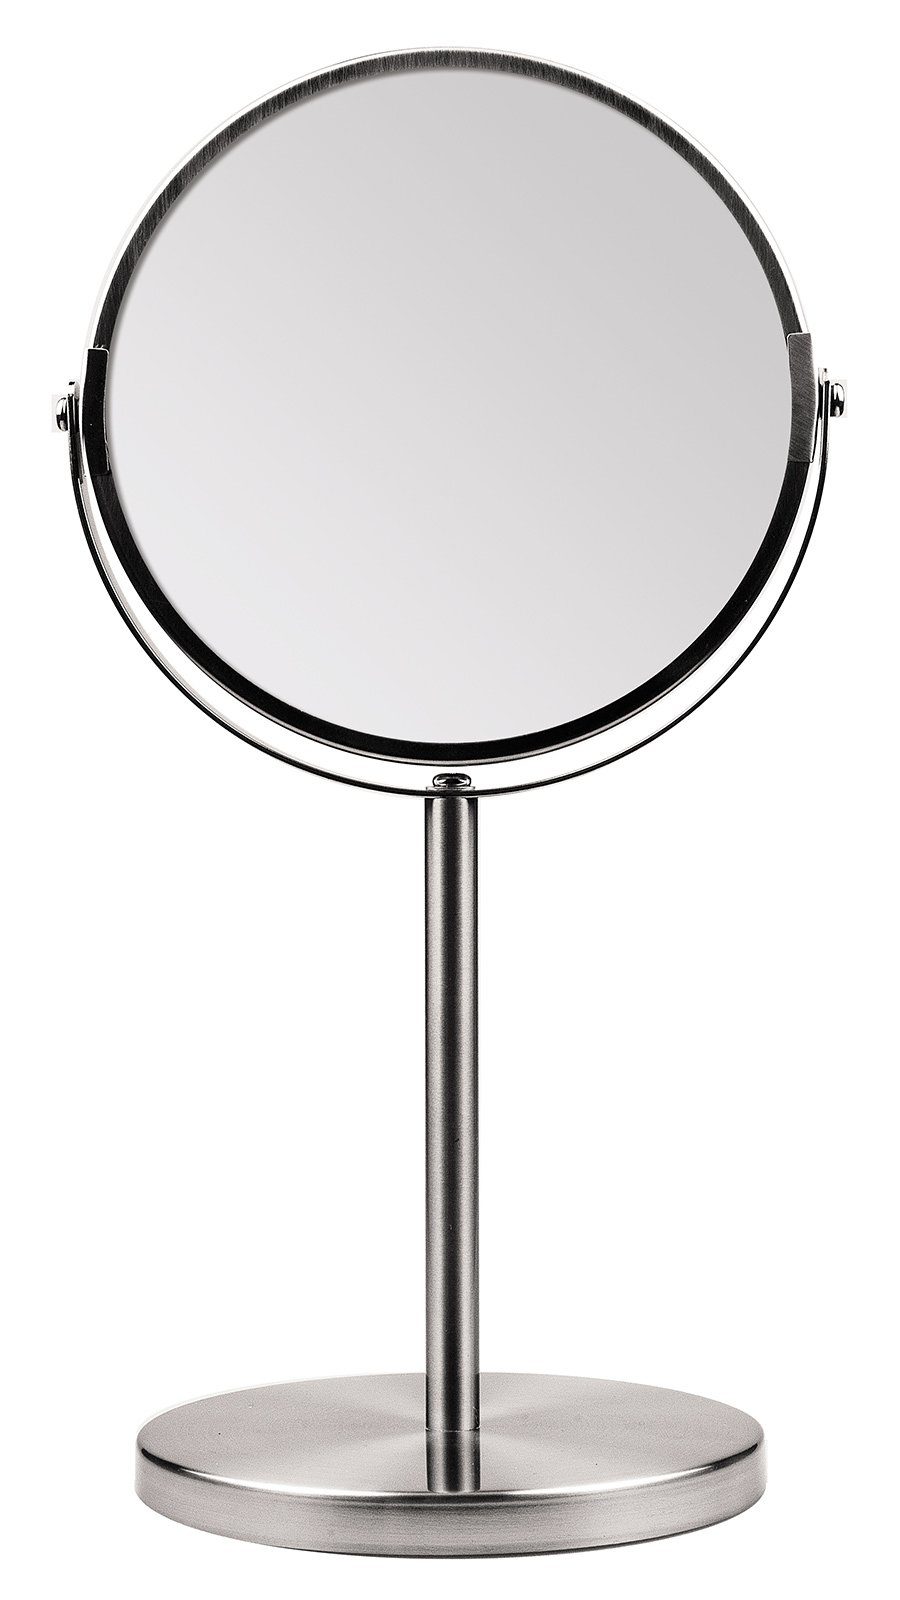 Koskaderm Spiegel Kosmetex Metall Stand-Spiegel 16cm, 34cm 2 Vergrößerung, Kosmetik-Spieg 2-fach Spiegelflächen, Ø mit